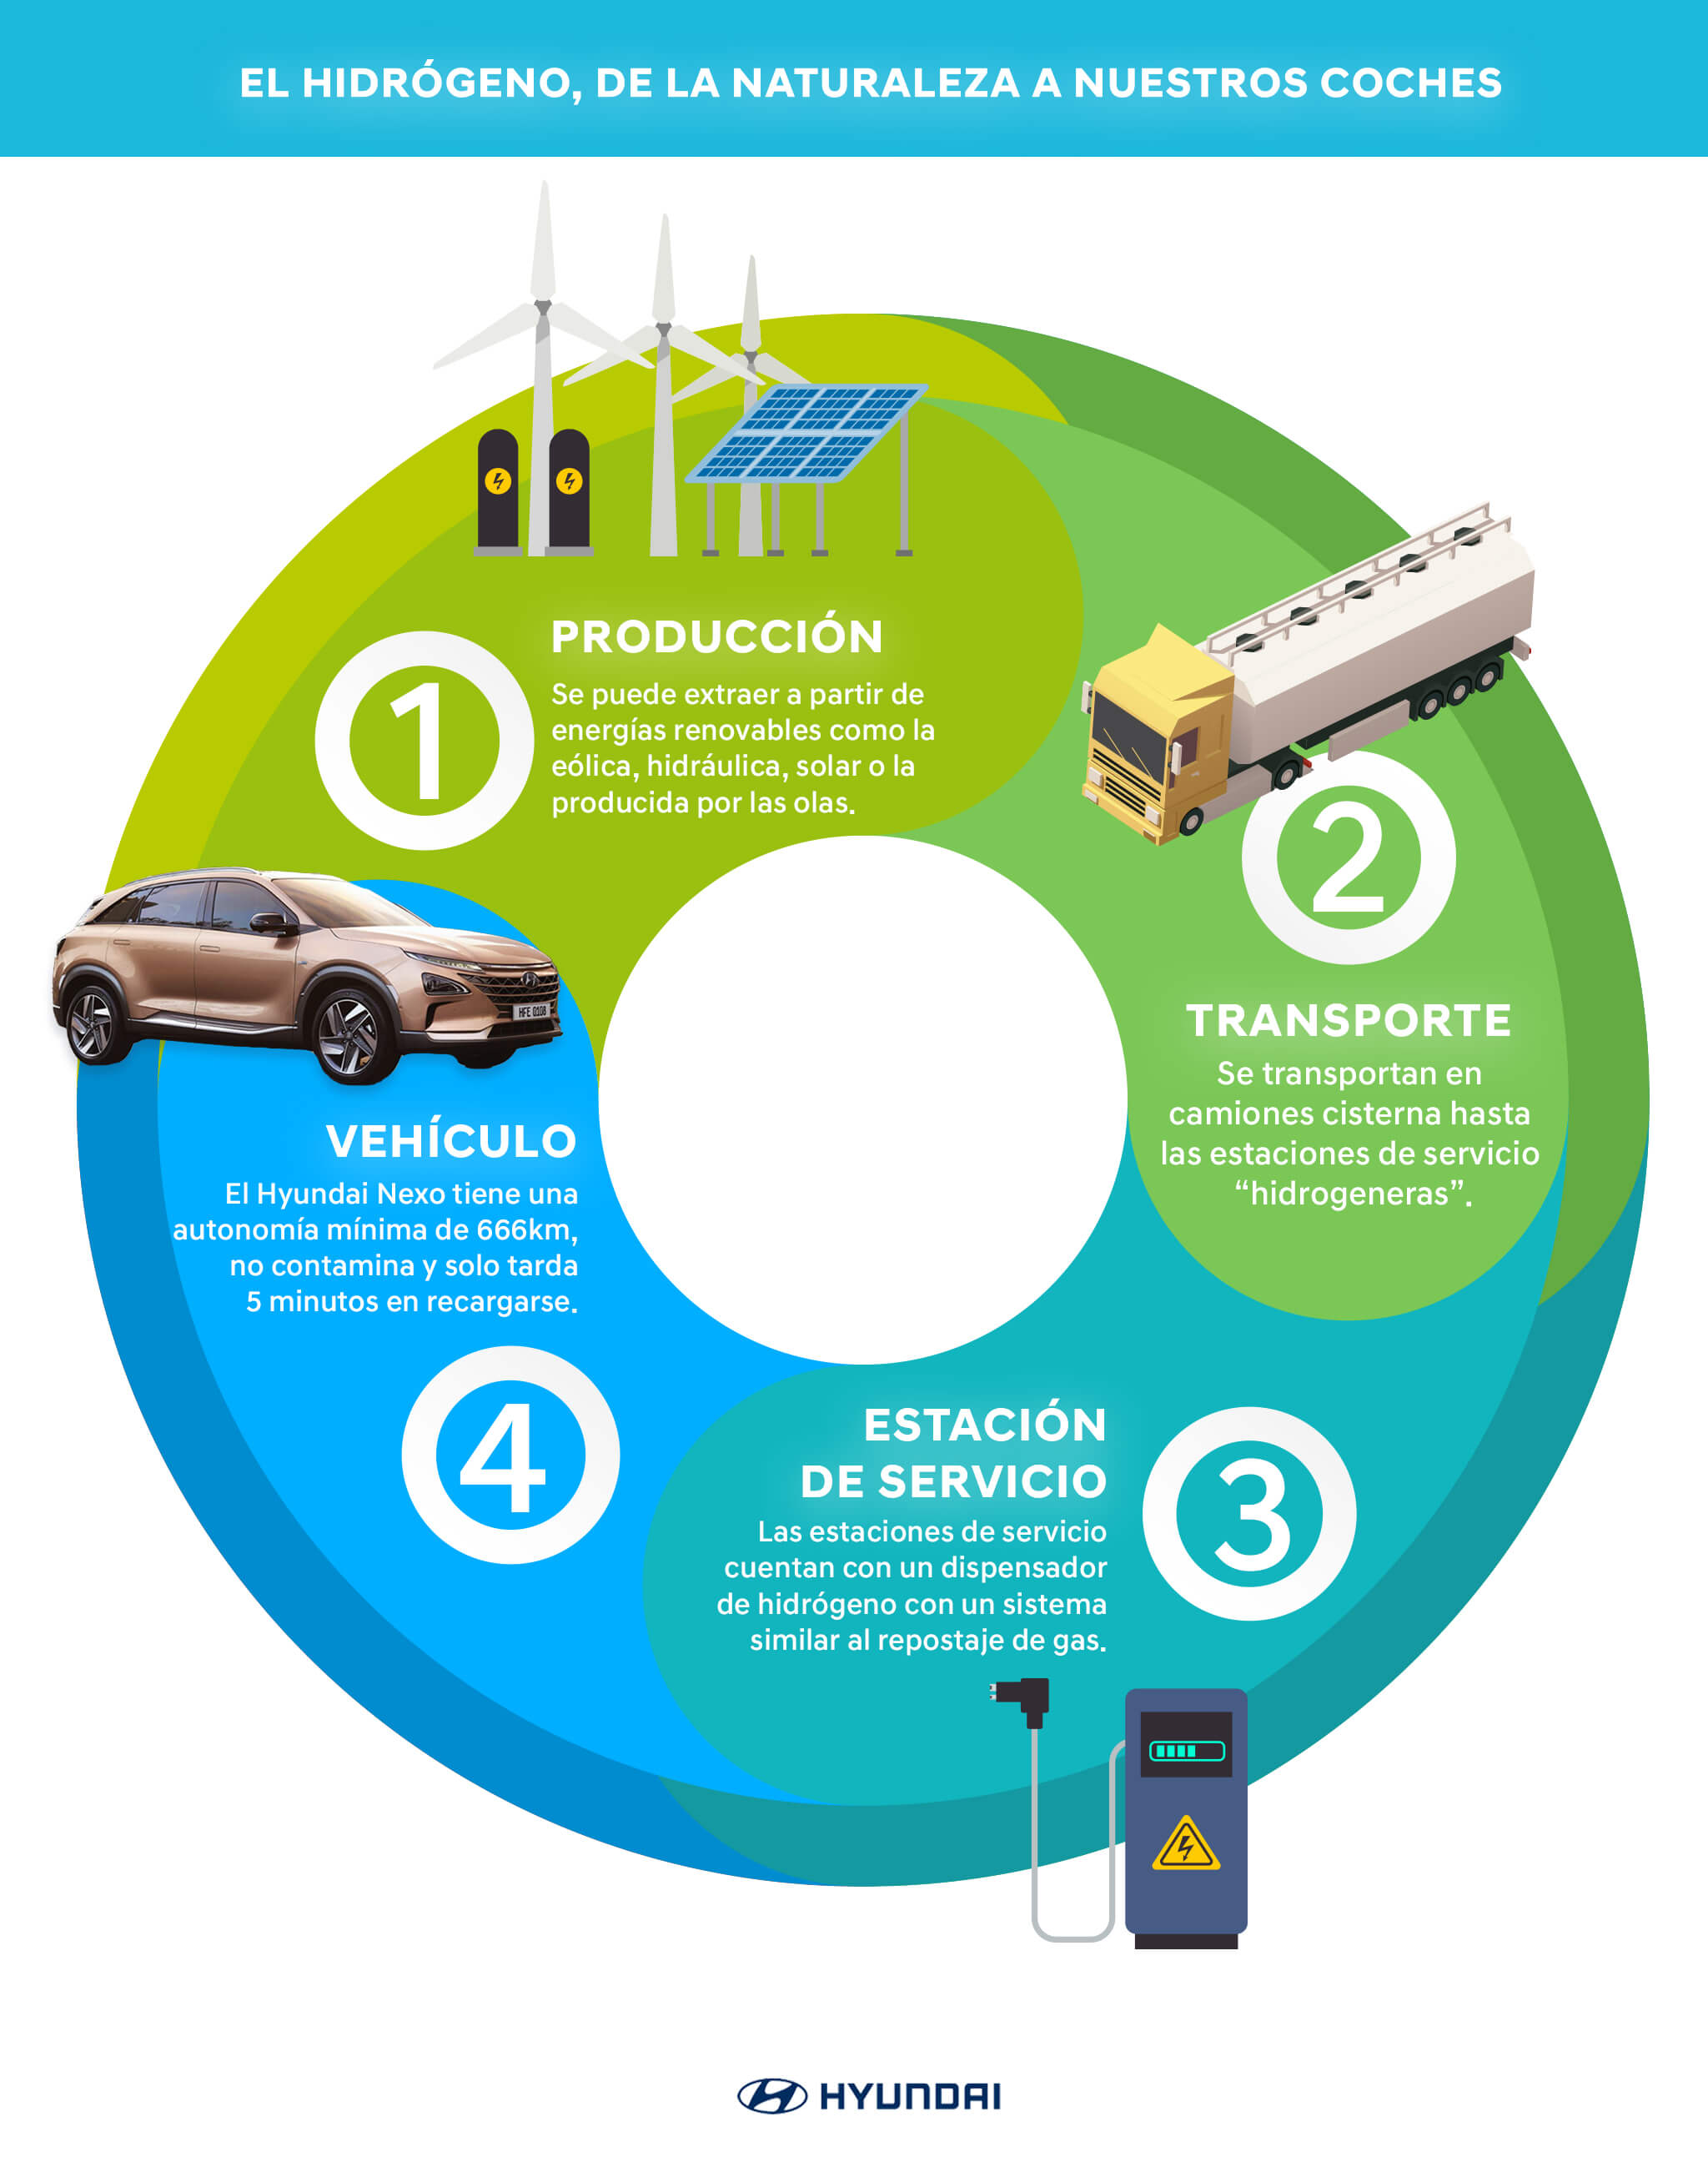 Proceso del hidrógeno, desde la naturaleza a nuestros coches: producción, transporte, estación de servicio y vehículo.